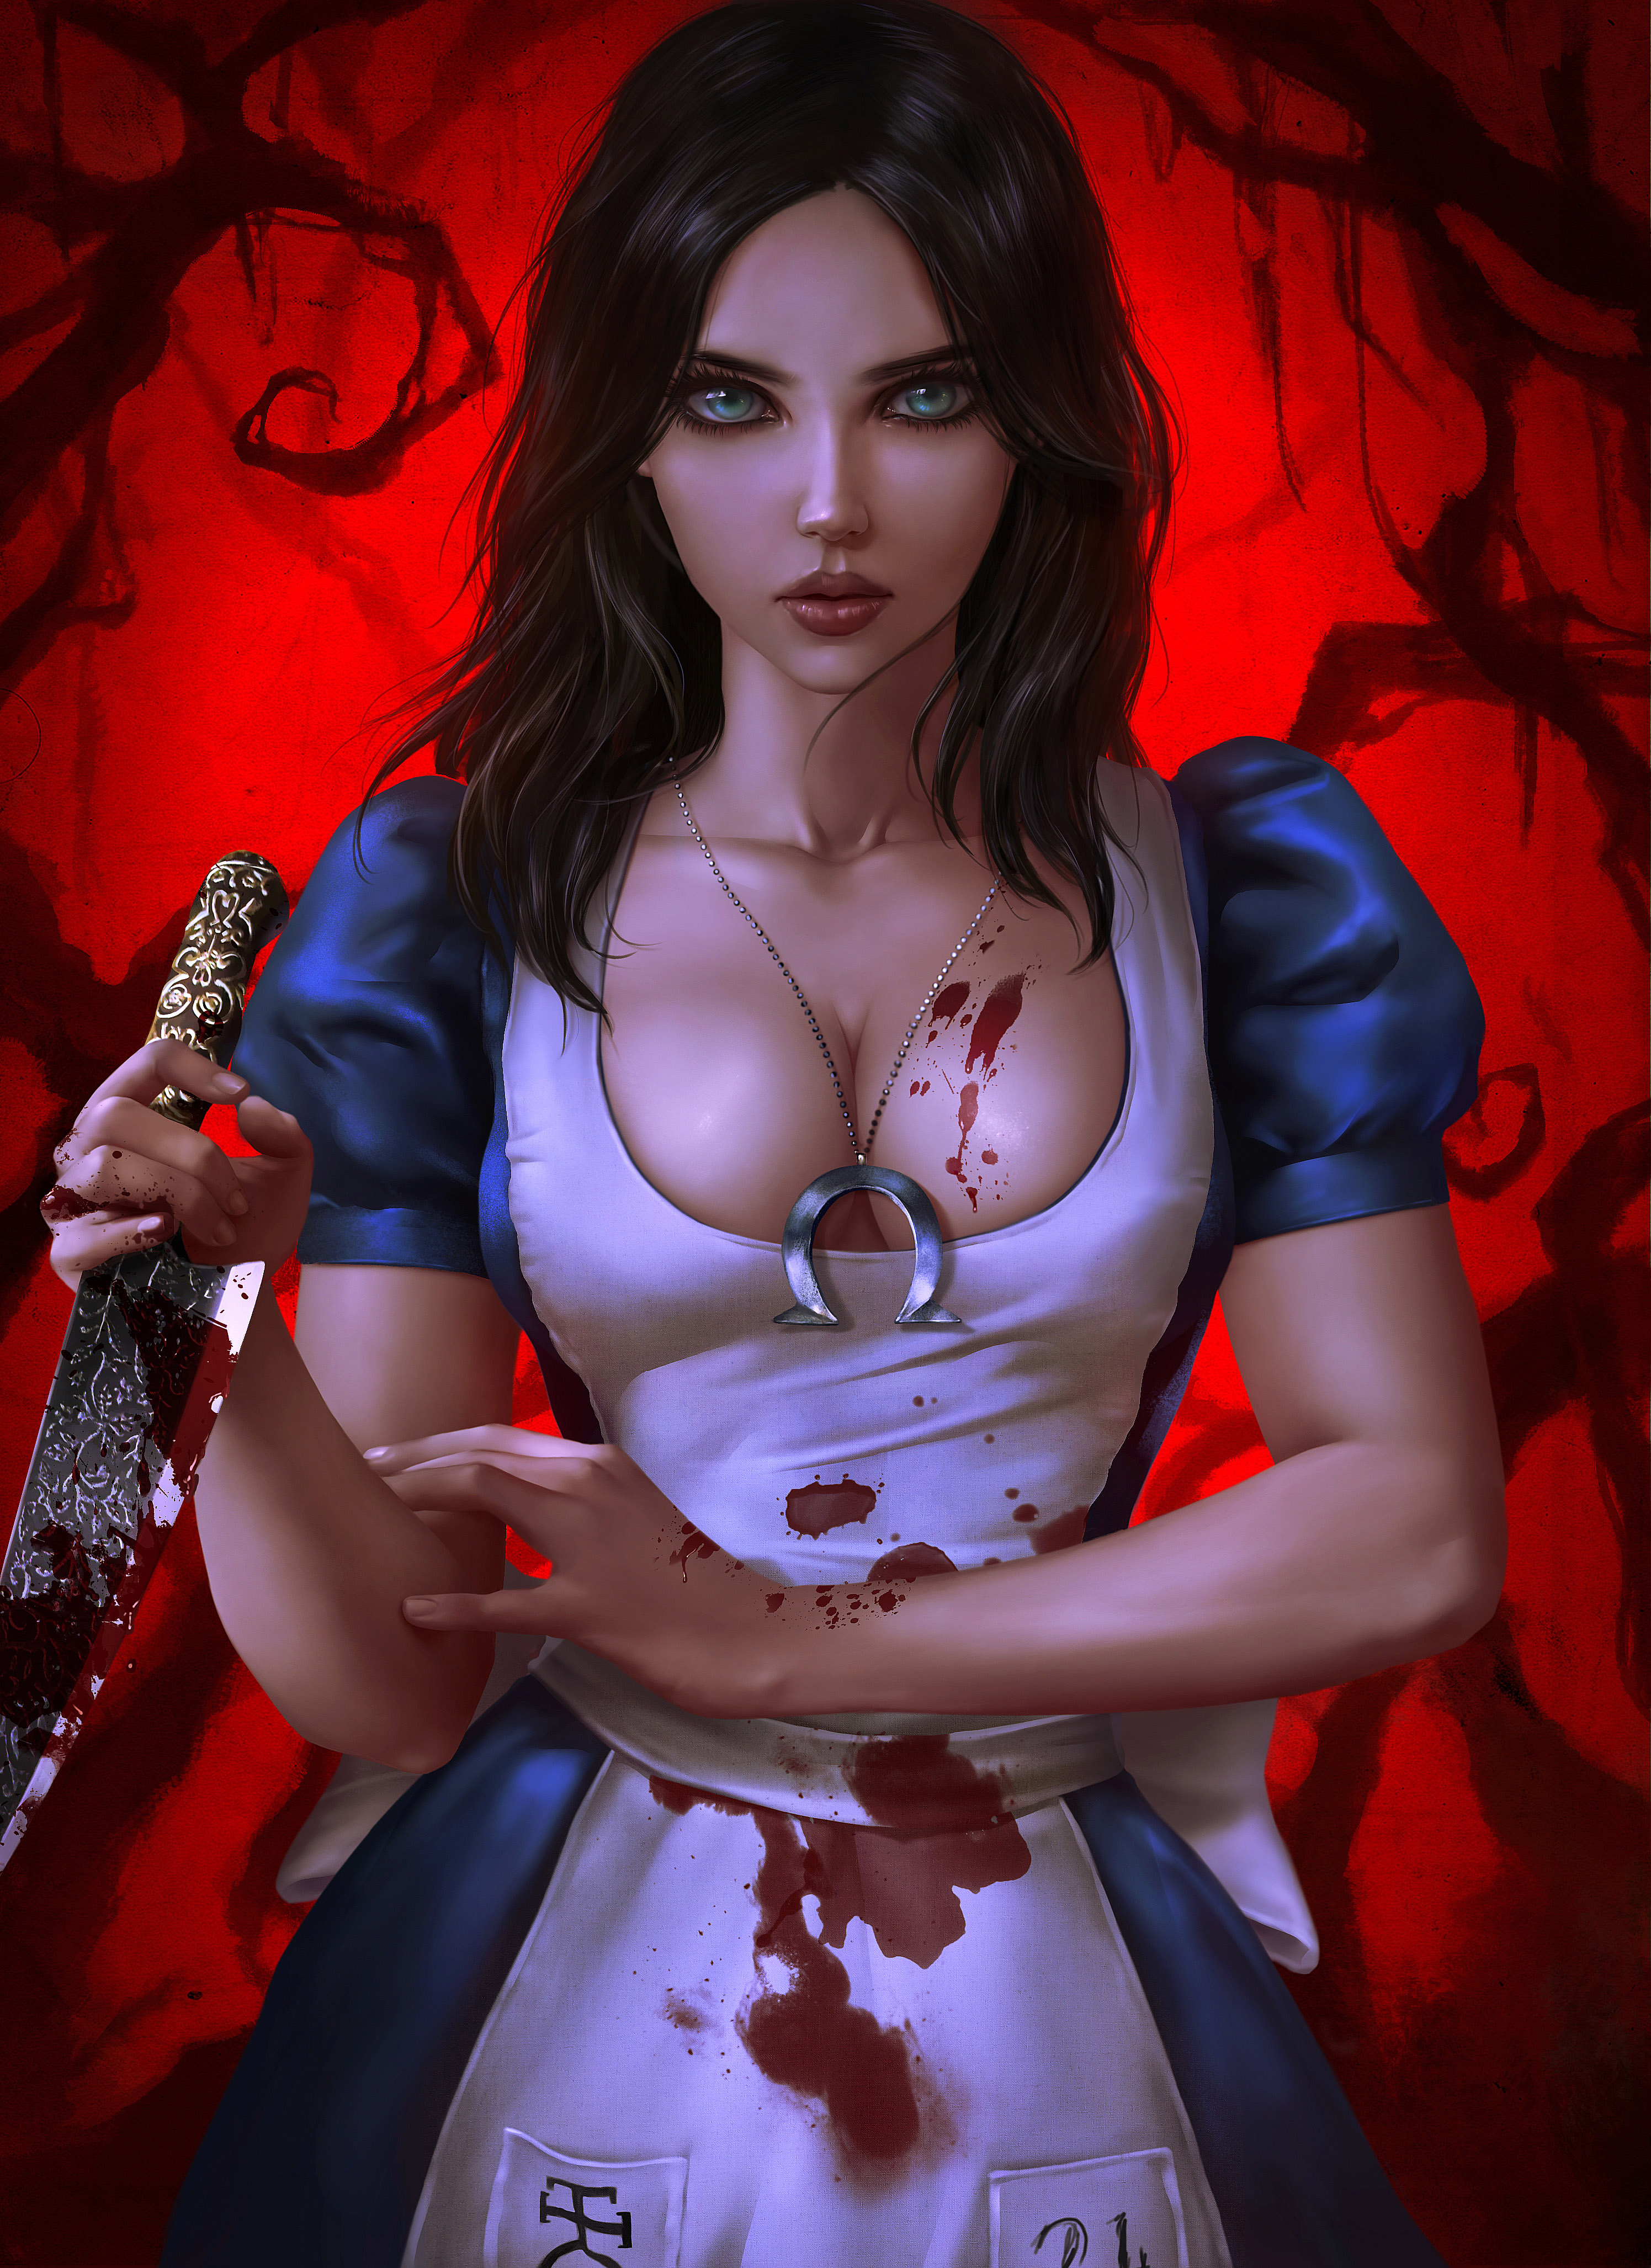 Фото Alice / Алиса слегка испачканная кровью стоит с ножом в руке, главная героиня из игры Alice: Madness Returns / Алиса: безумие возвращается, art by Logan Cure